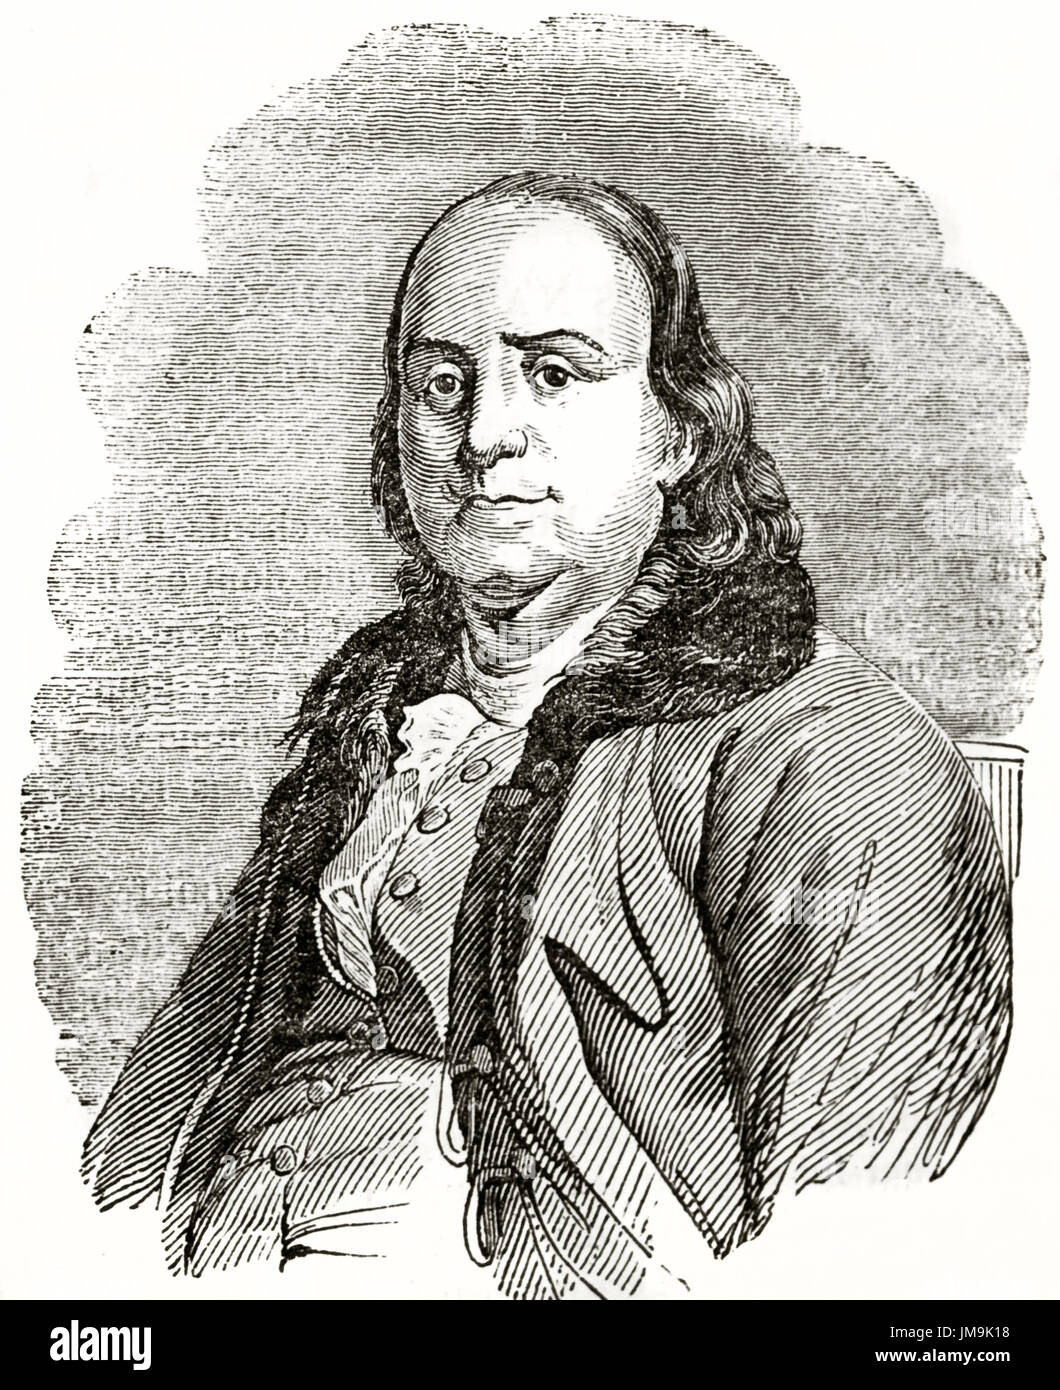 Ancien portrait gravé de Benjamin Franklin (1706 - 1790), mathématicien et homme d'État. Créé par Jackson, publié le Magasin Pittoresque, Paris, 1837. Banque D'Images